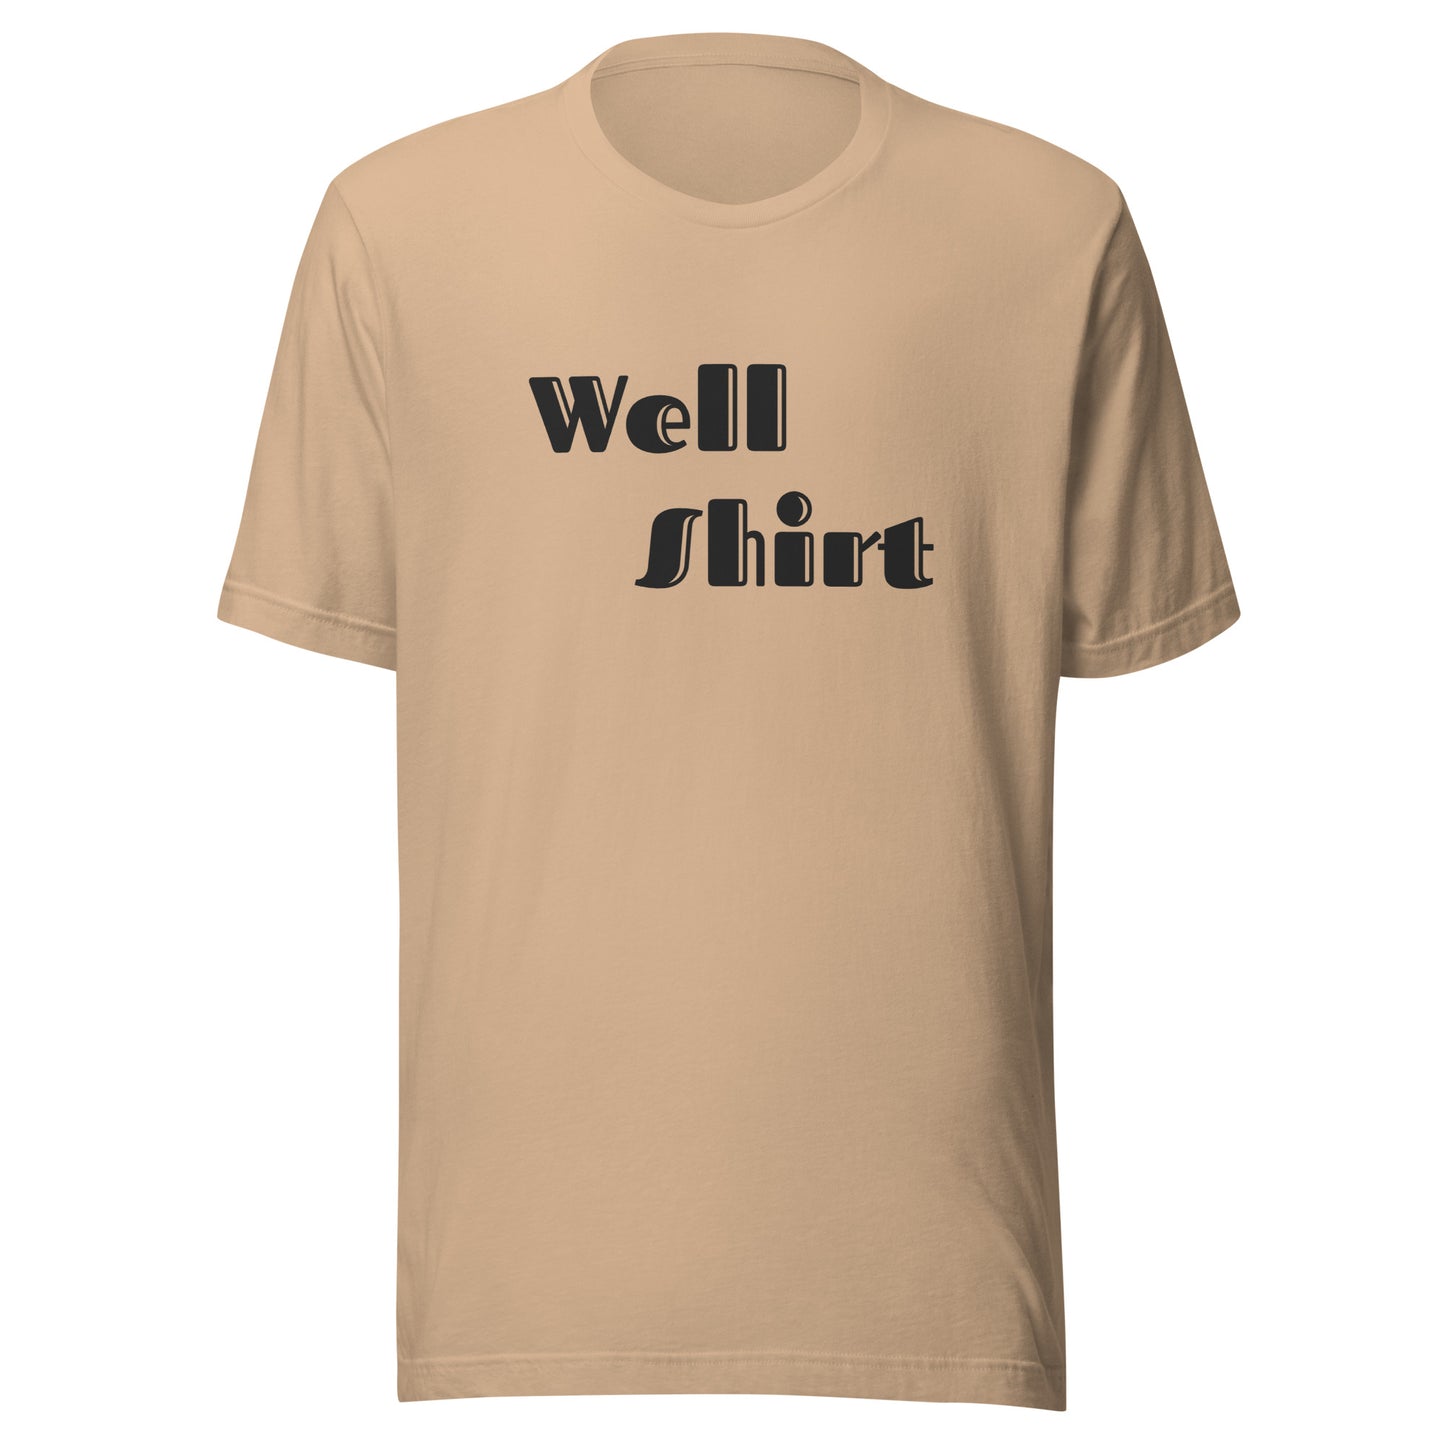 Well Shirt “Retro Art” Unisex t-shirt